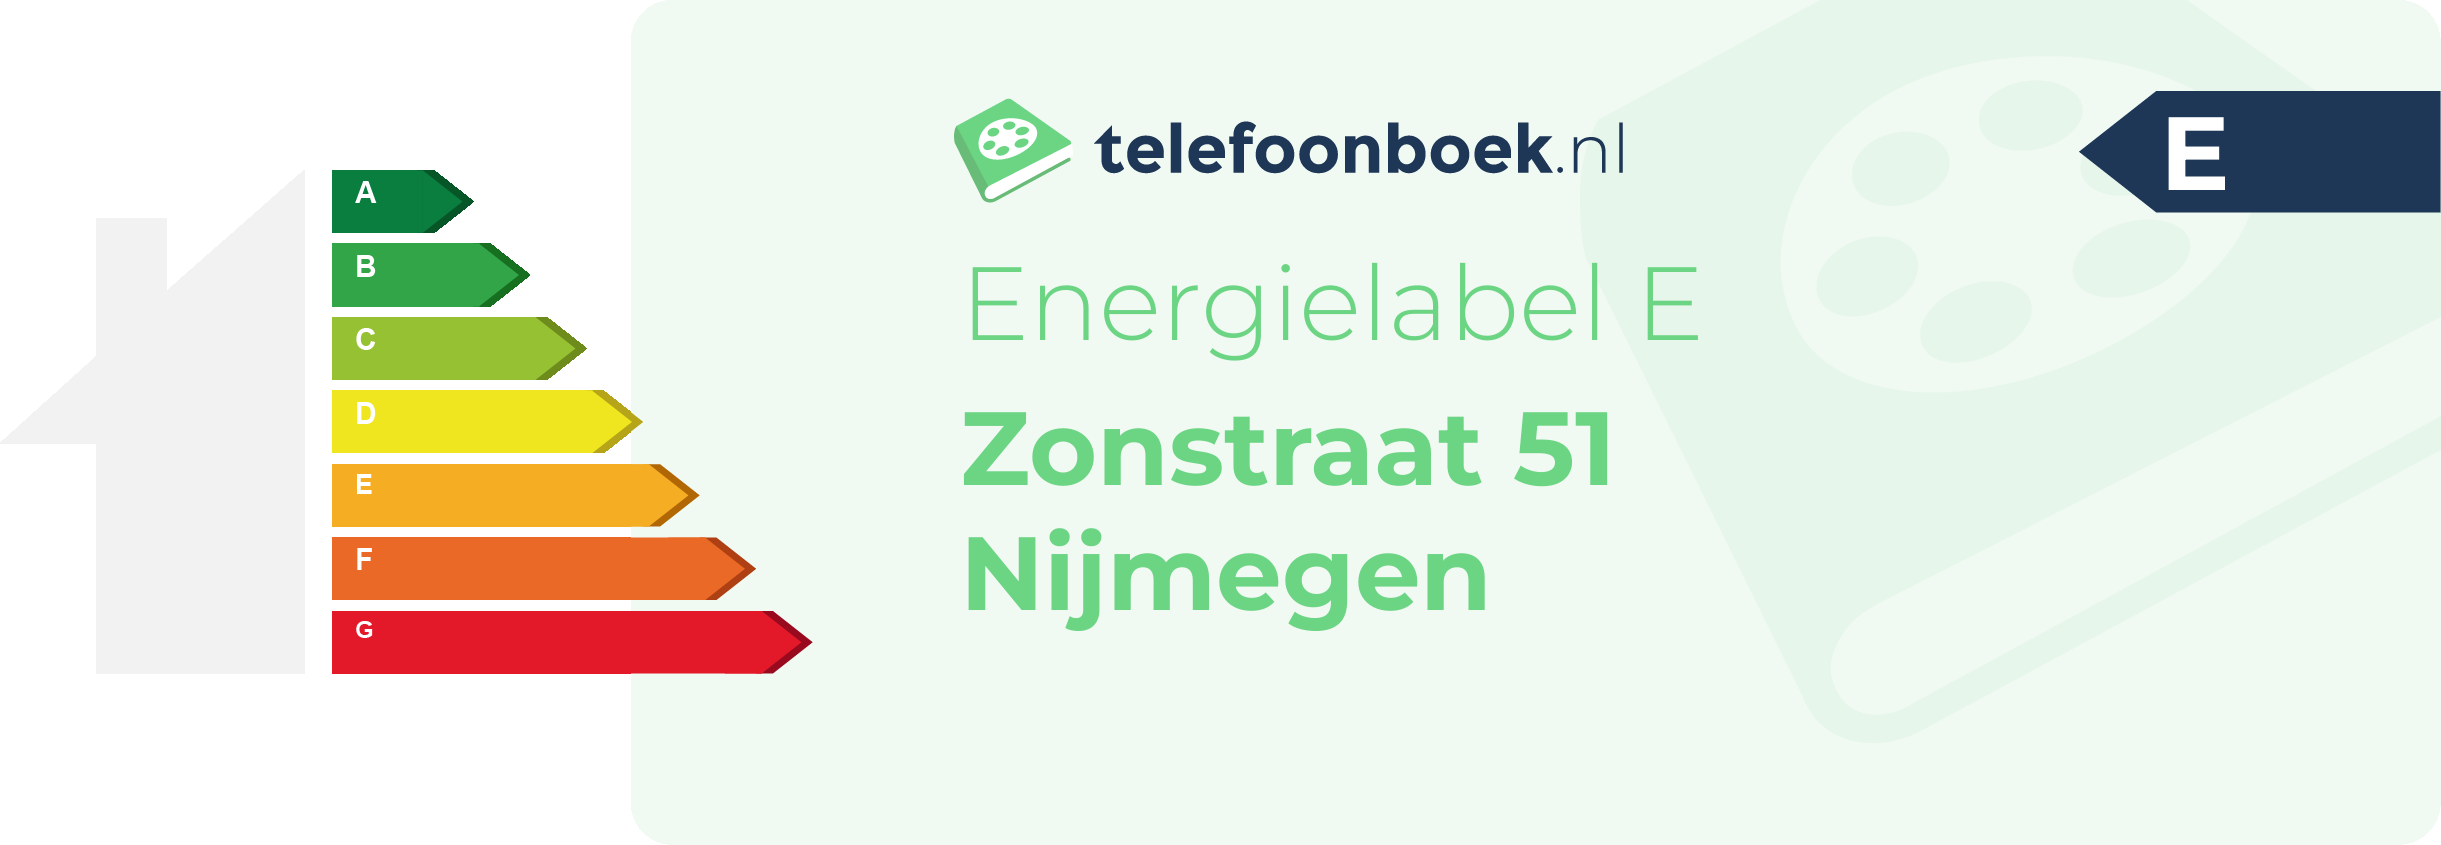 Energielabel Zonstraat 51 Nijmegen